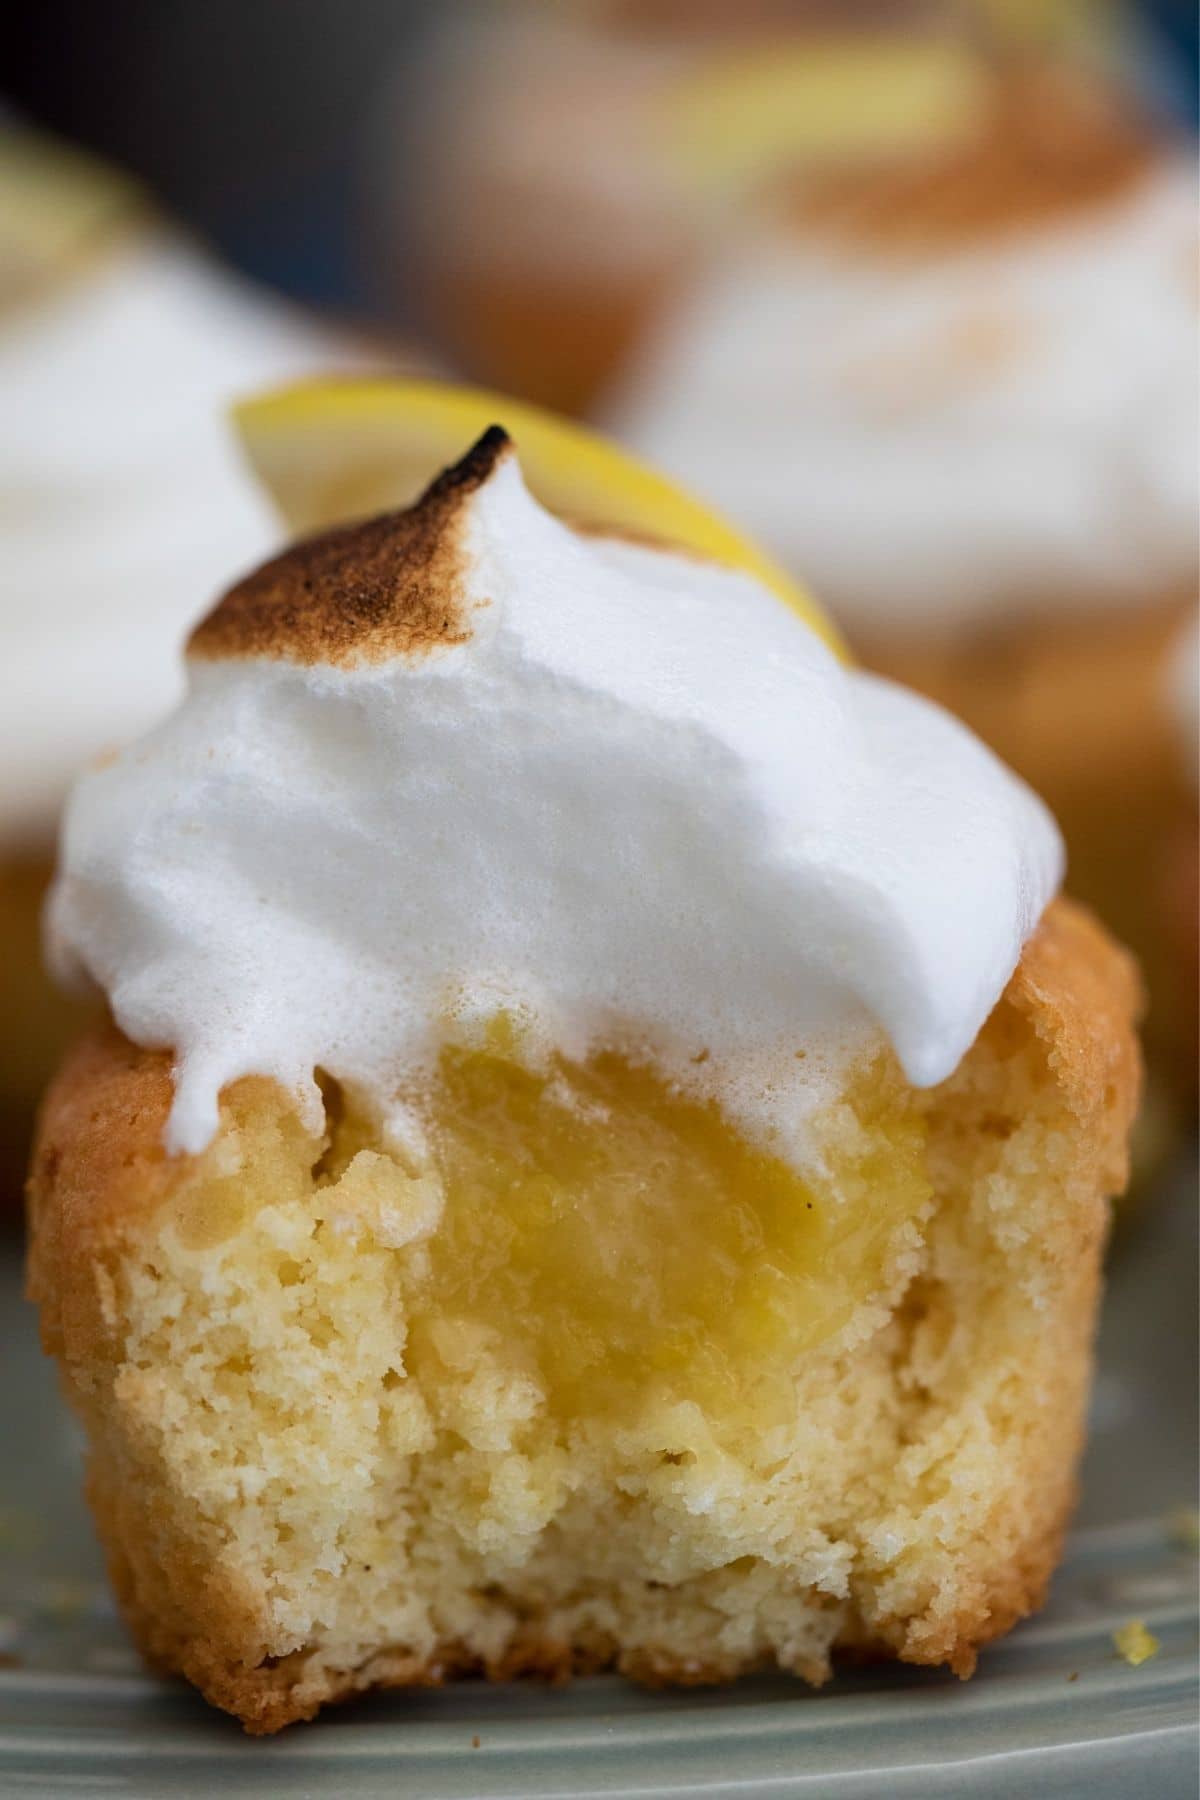 Lemon meringue cupcake with curd inside